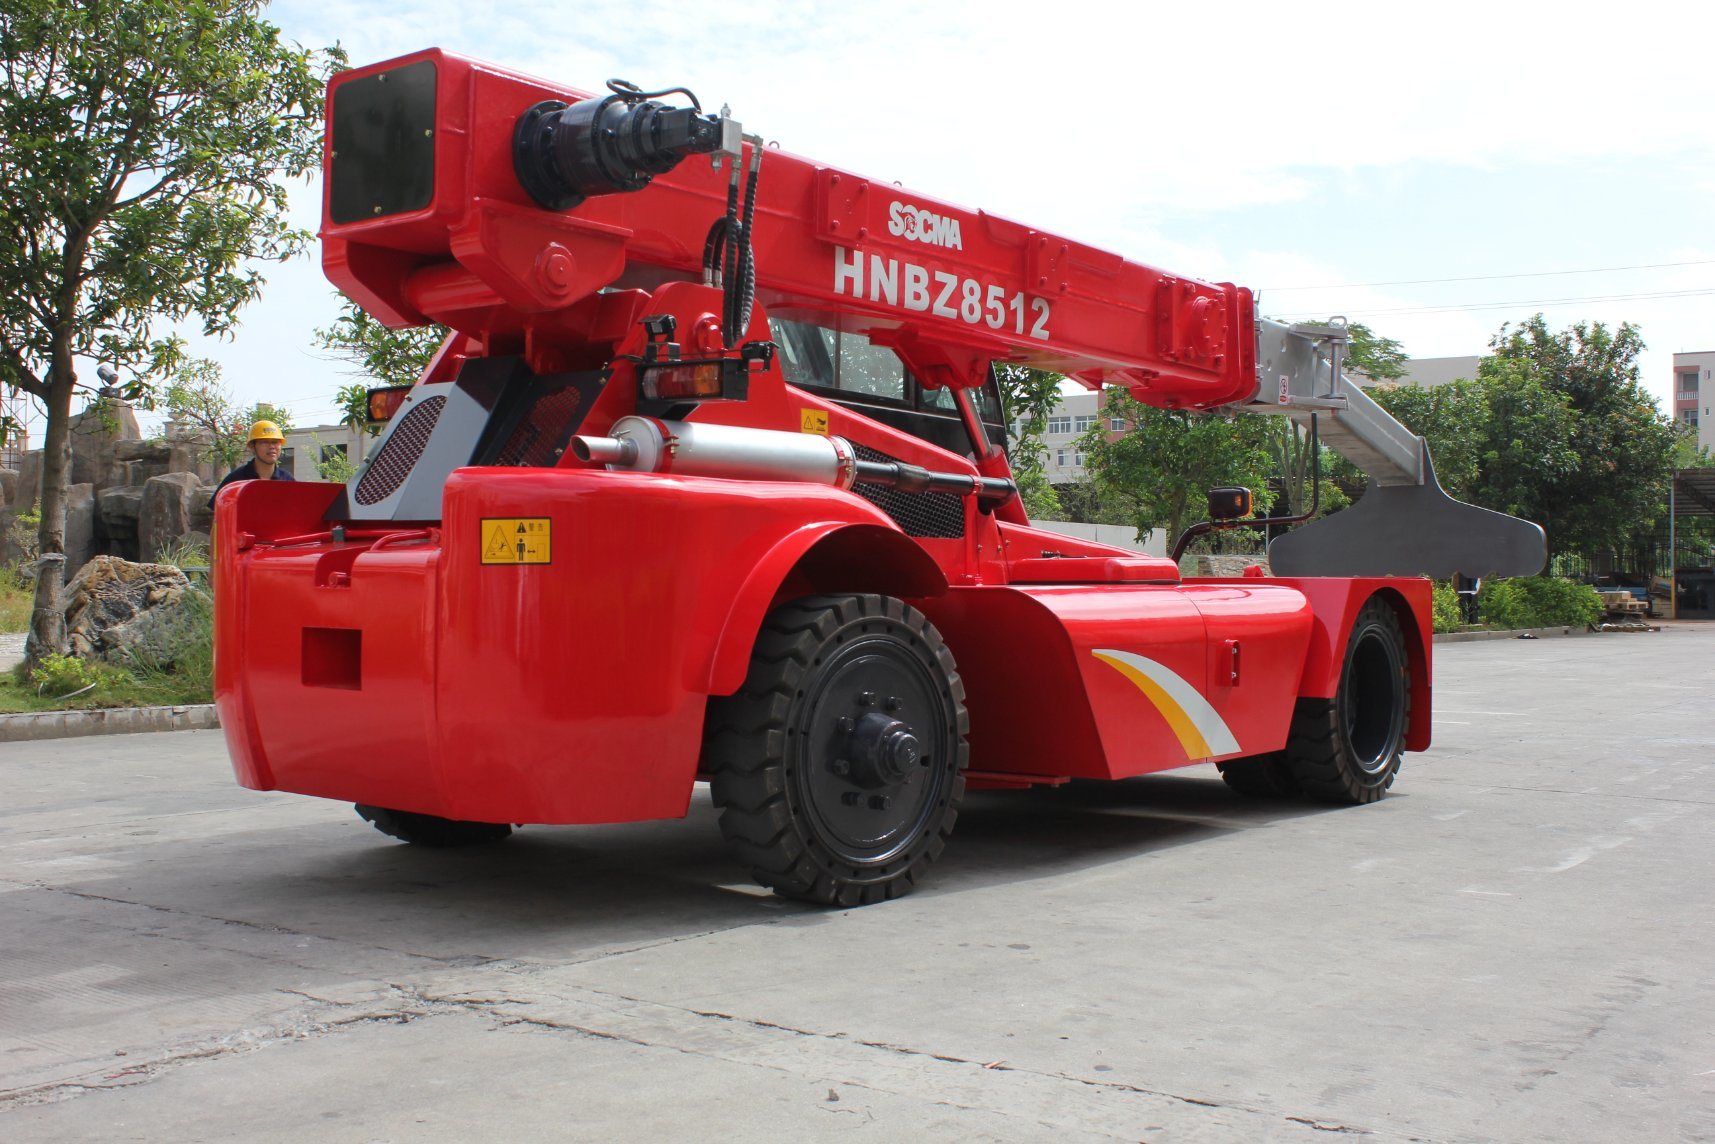 Brand New Socma Hnbz8512 High Quality Telescopic Forklift